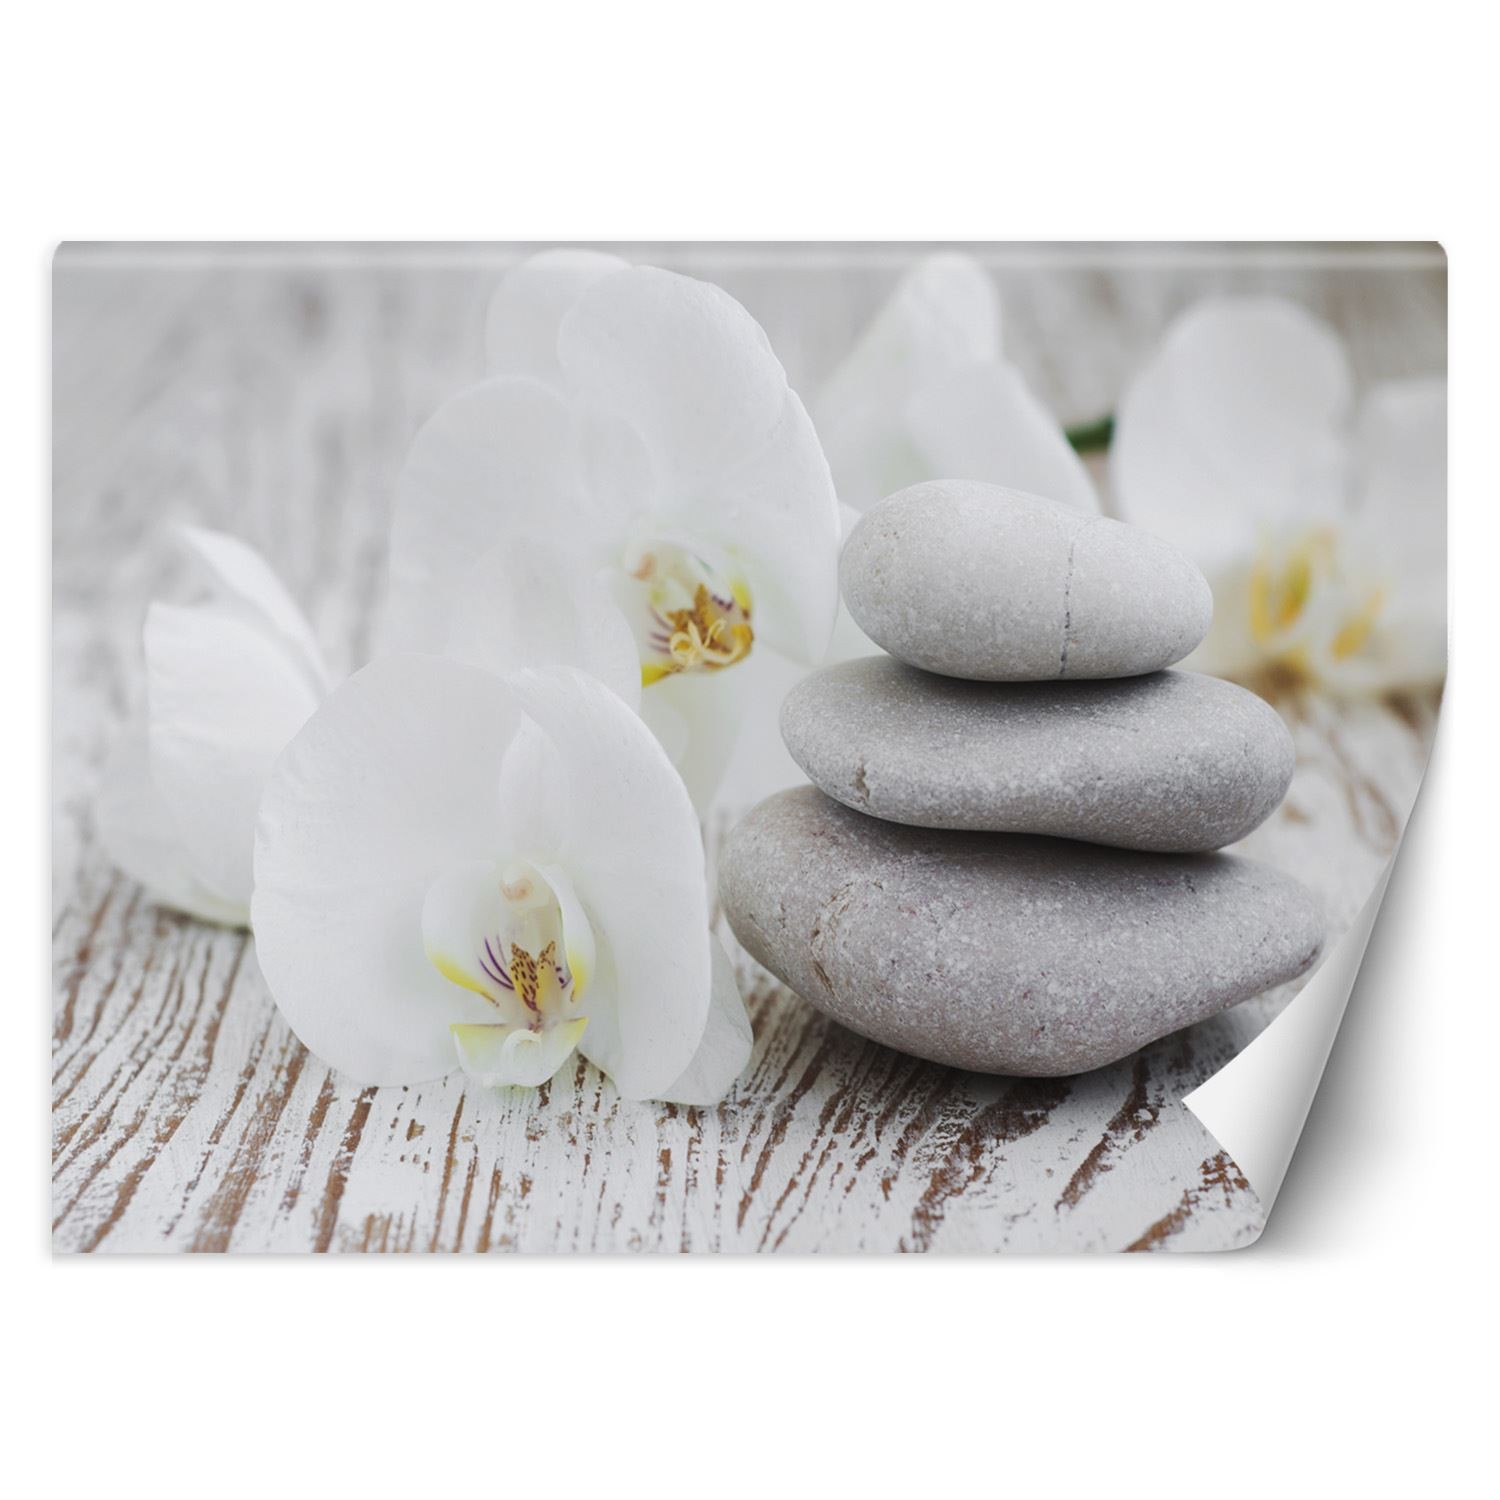 Trend24 – Behang – Flowers & Zen Stones – Vliesbehang – Fotobehang – Behang Woonkamer – 350x245x2 cm – Incl. behanglijm